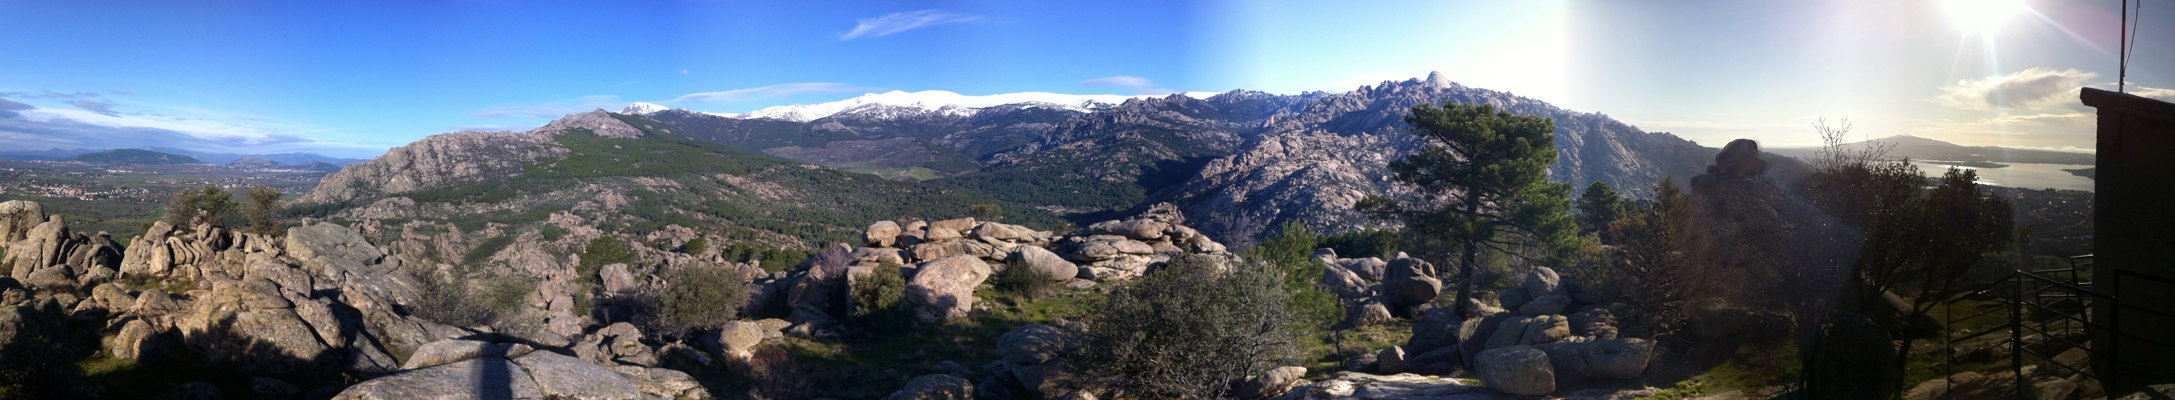 Vistas desde el Cerro de la Camorza